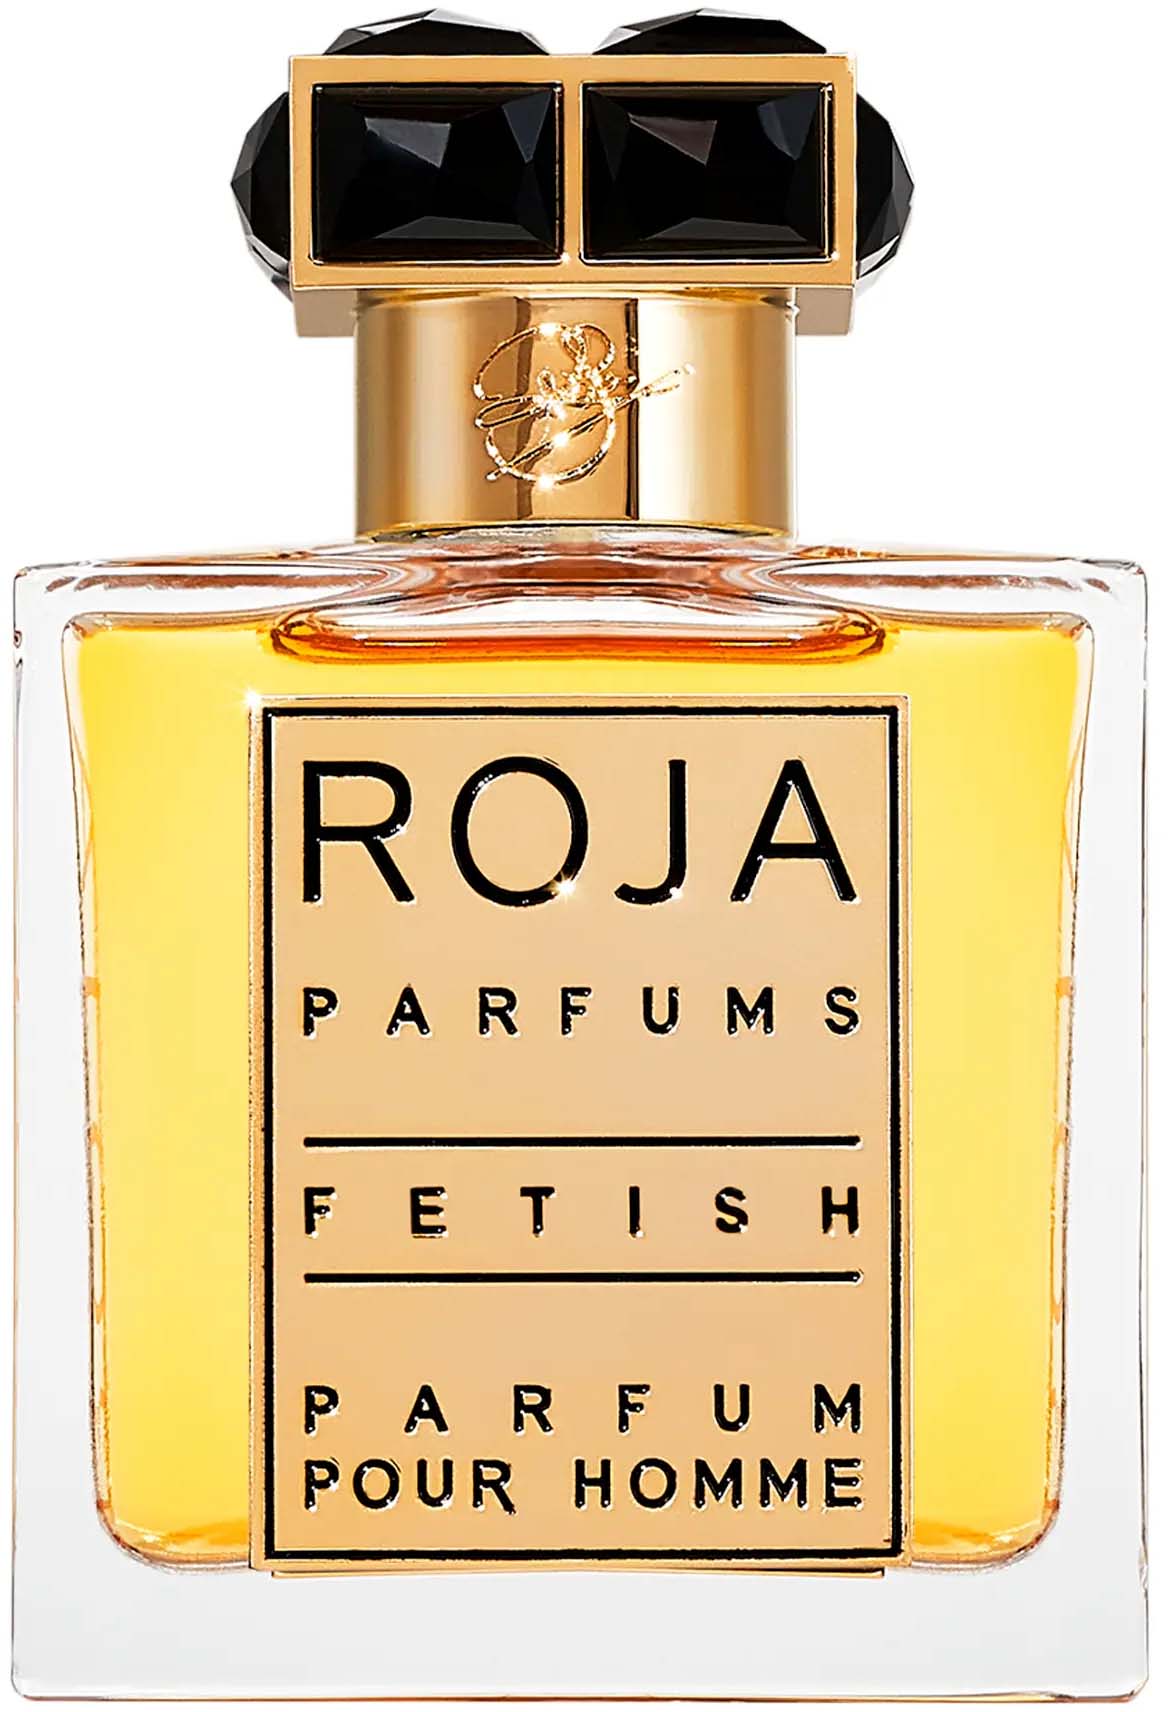 ROJA PARFUMS Fetish Pour Homme Parfum 50 ml | lyko.com